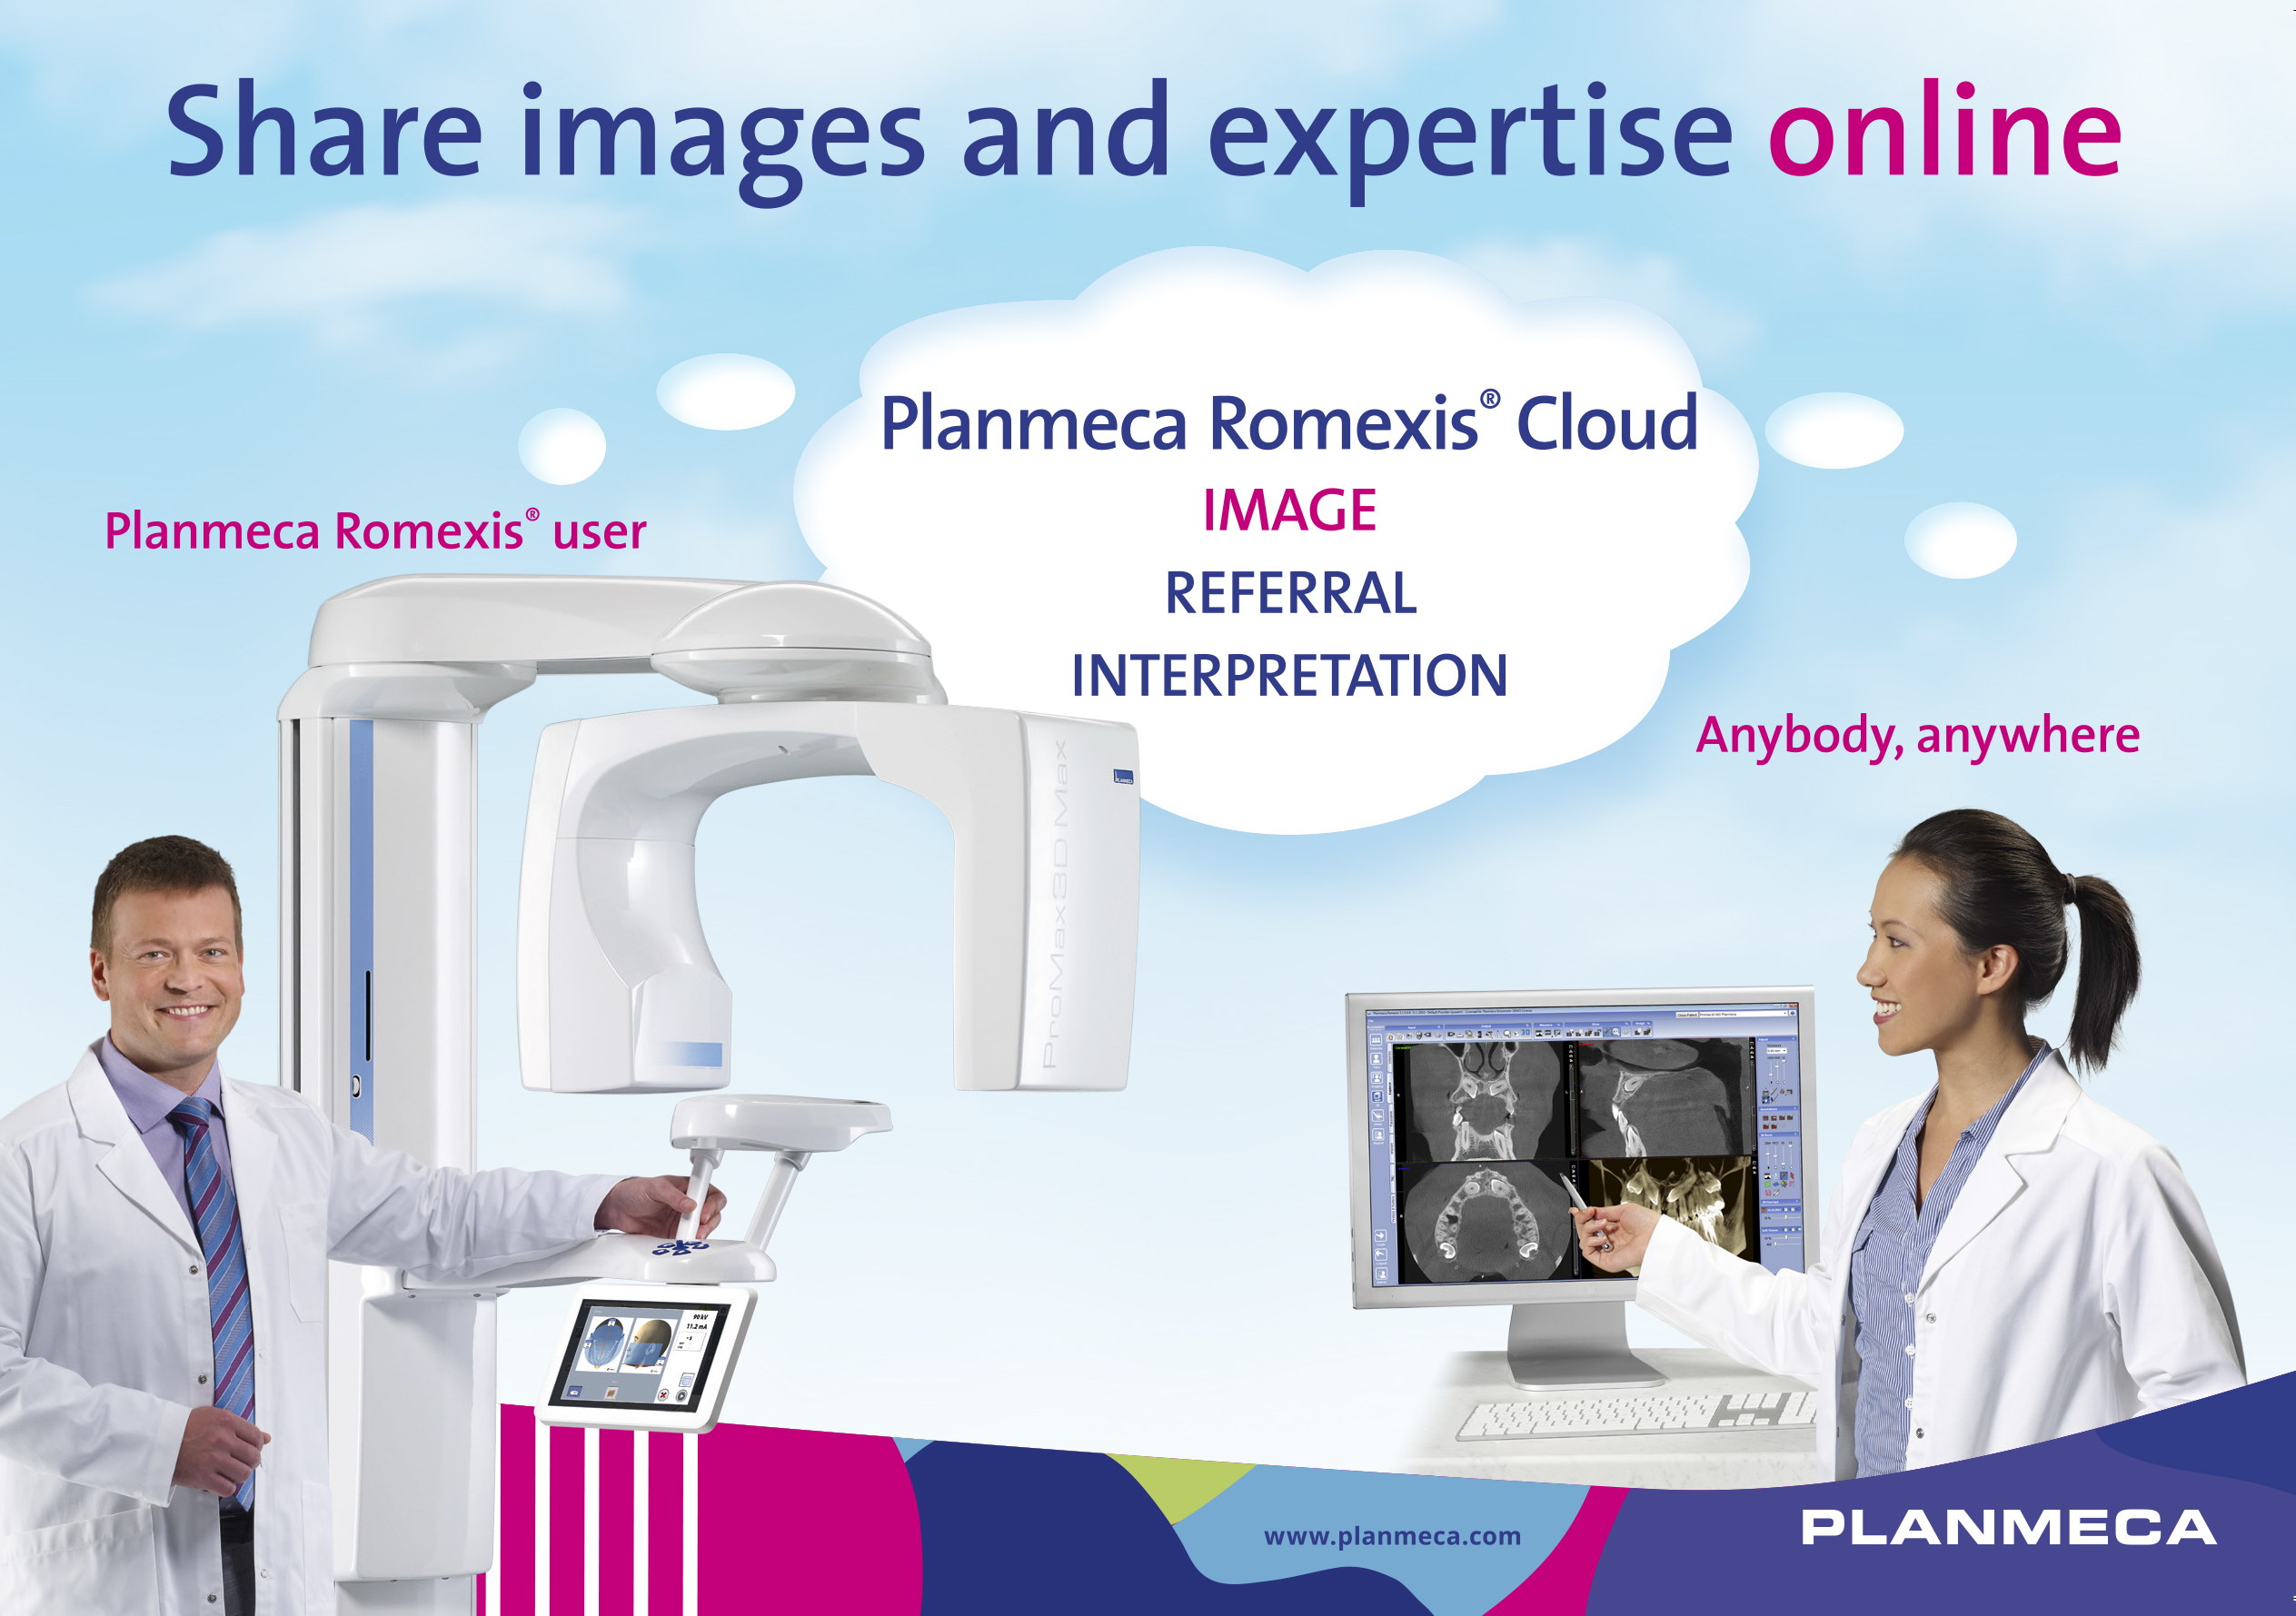 Nowa usługa Planmeca Romexis® Cloud umożliwia łatwe przesyłanie obrazów pomiędzy profesjonalistami